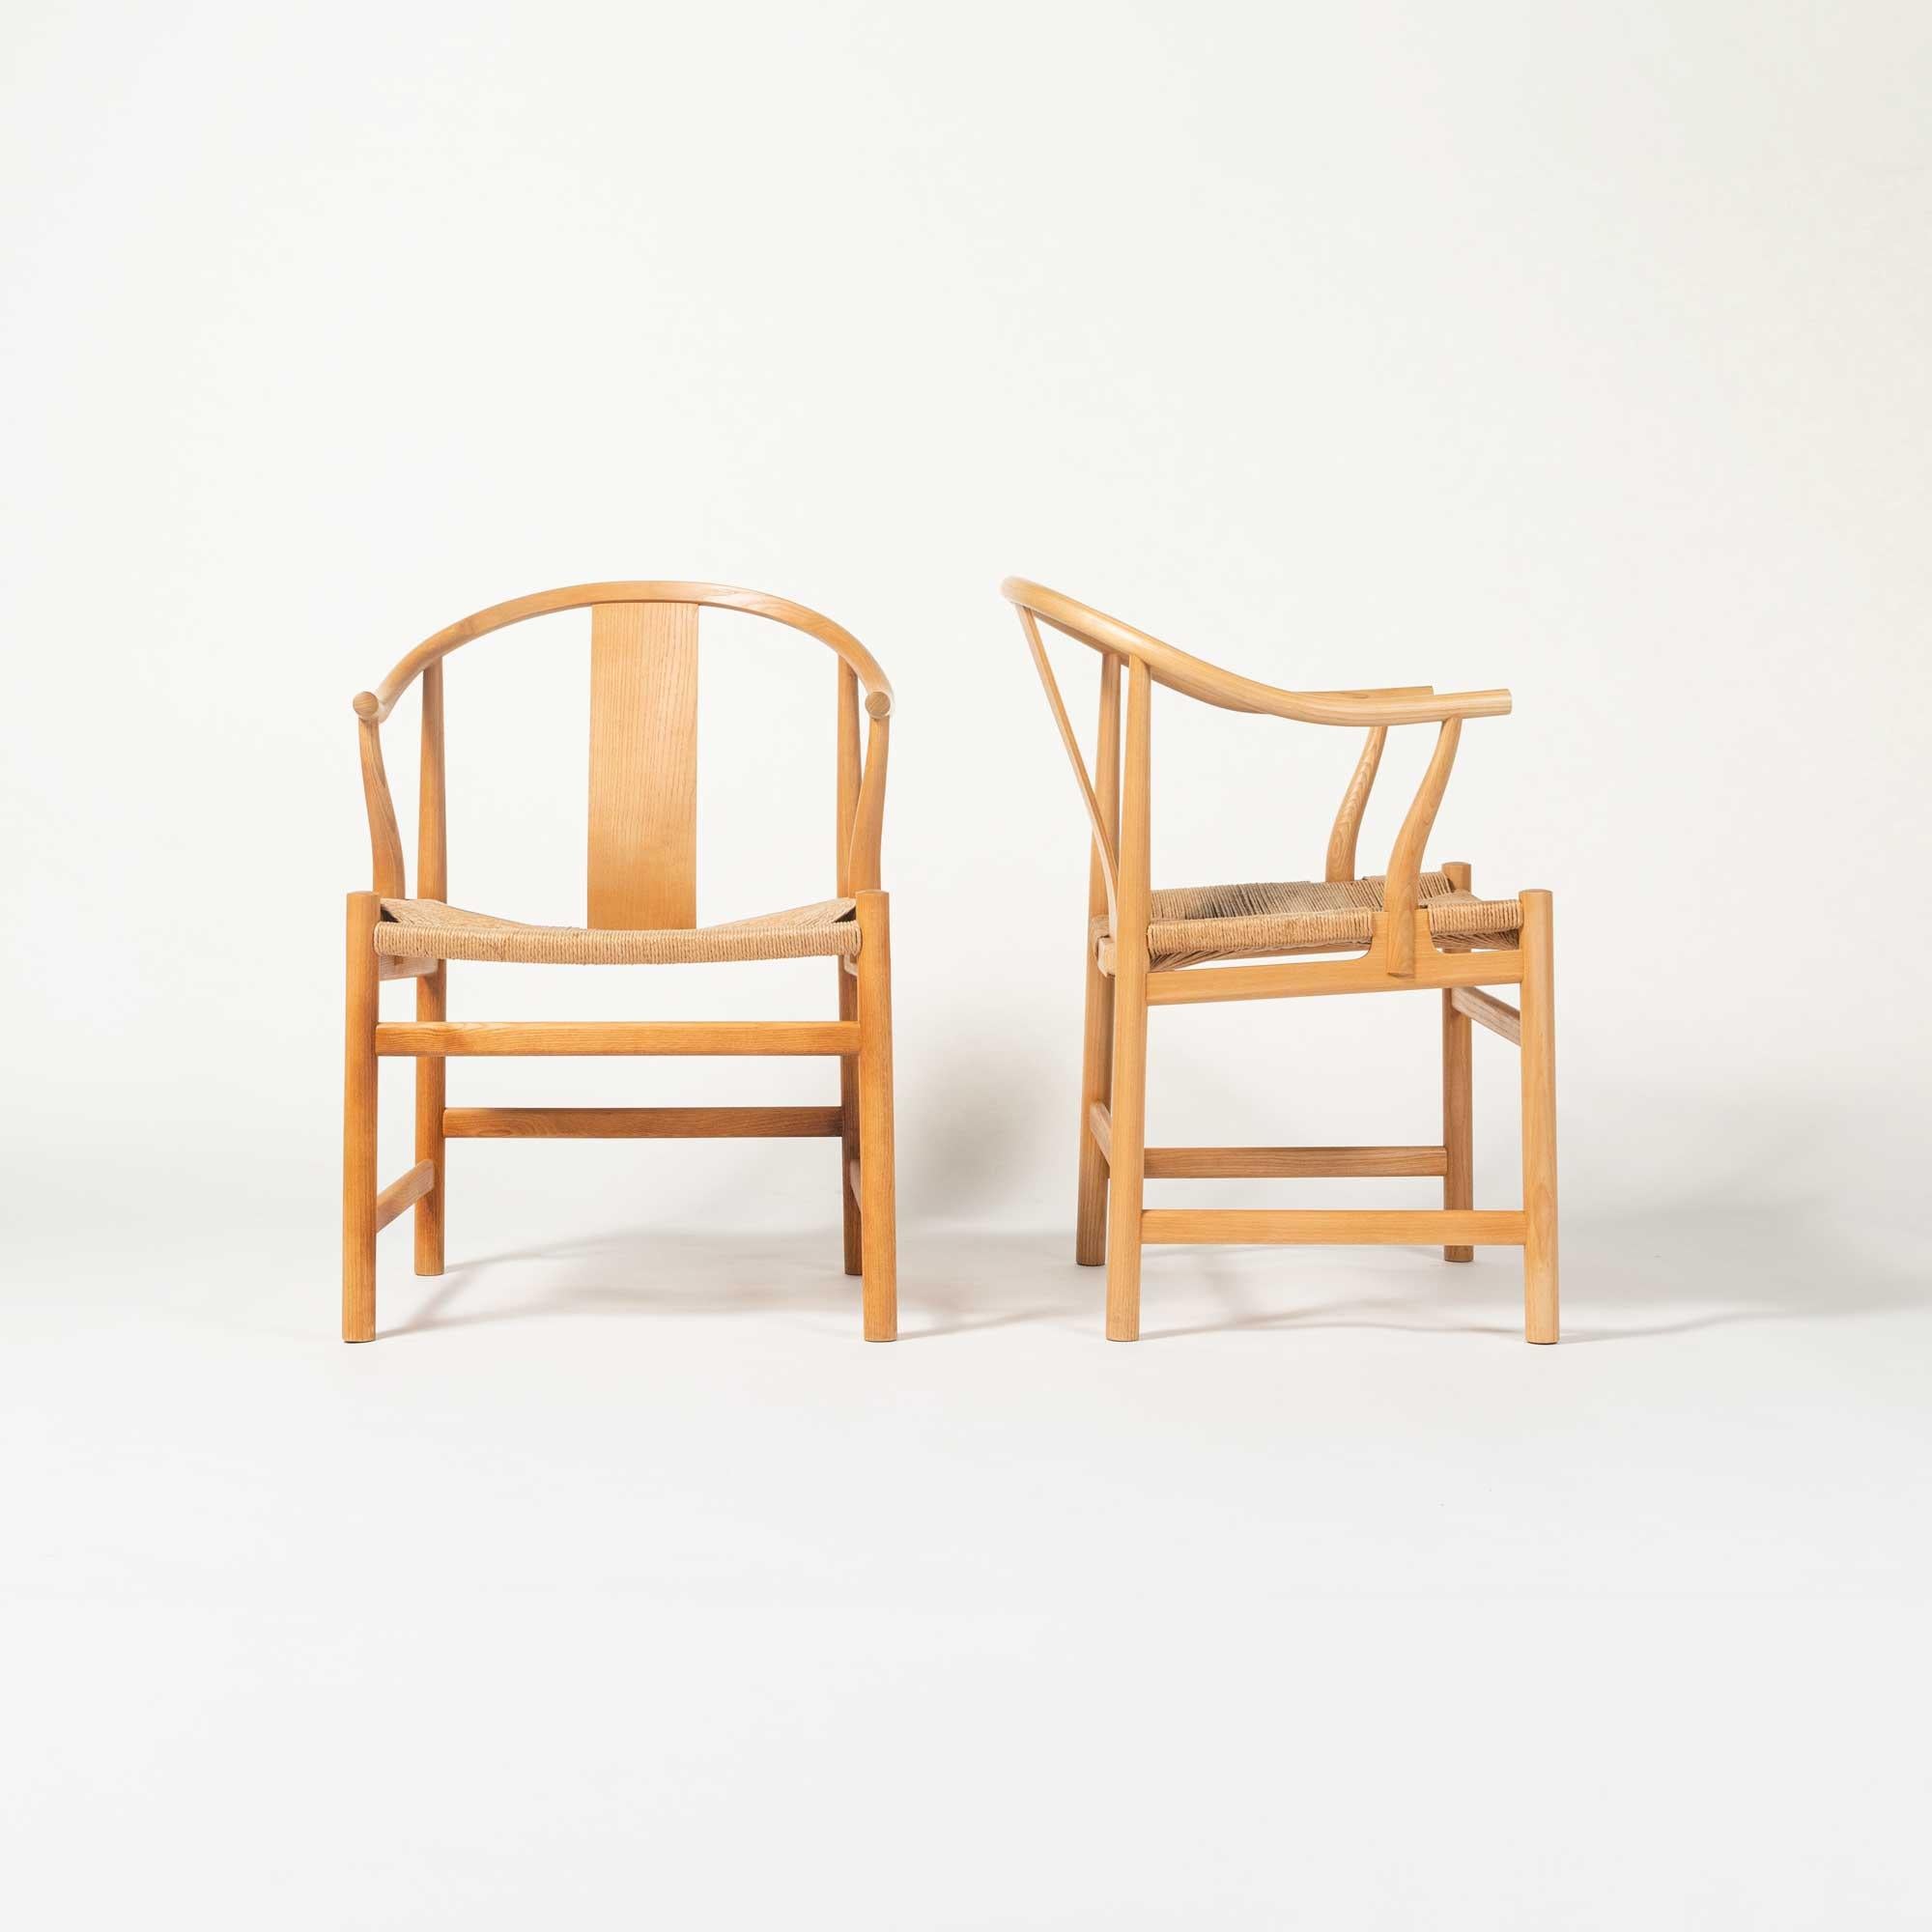 Lors de l'exposition d'automne de la Guilde des ébénistes en 1943, Wegner a présenté sa première version d'une chaise inspirée d'une vieille chaise chinoise, qu'il avait vue au Musée danois des arts industriels. Depuis lors, d'autres versions sont